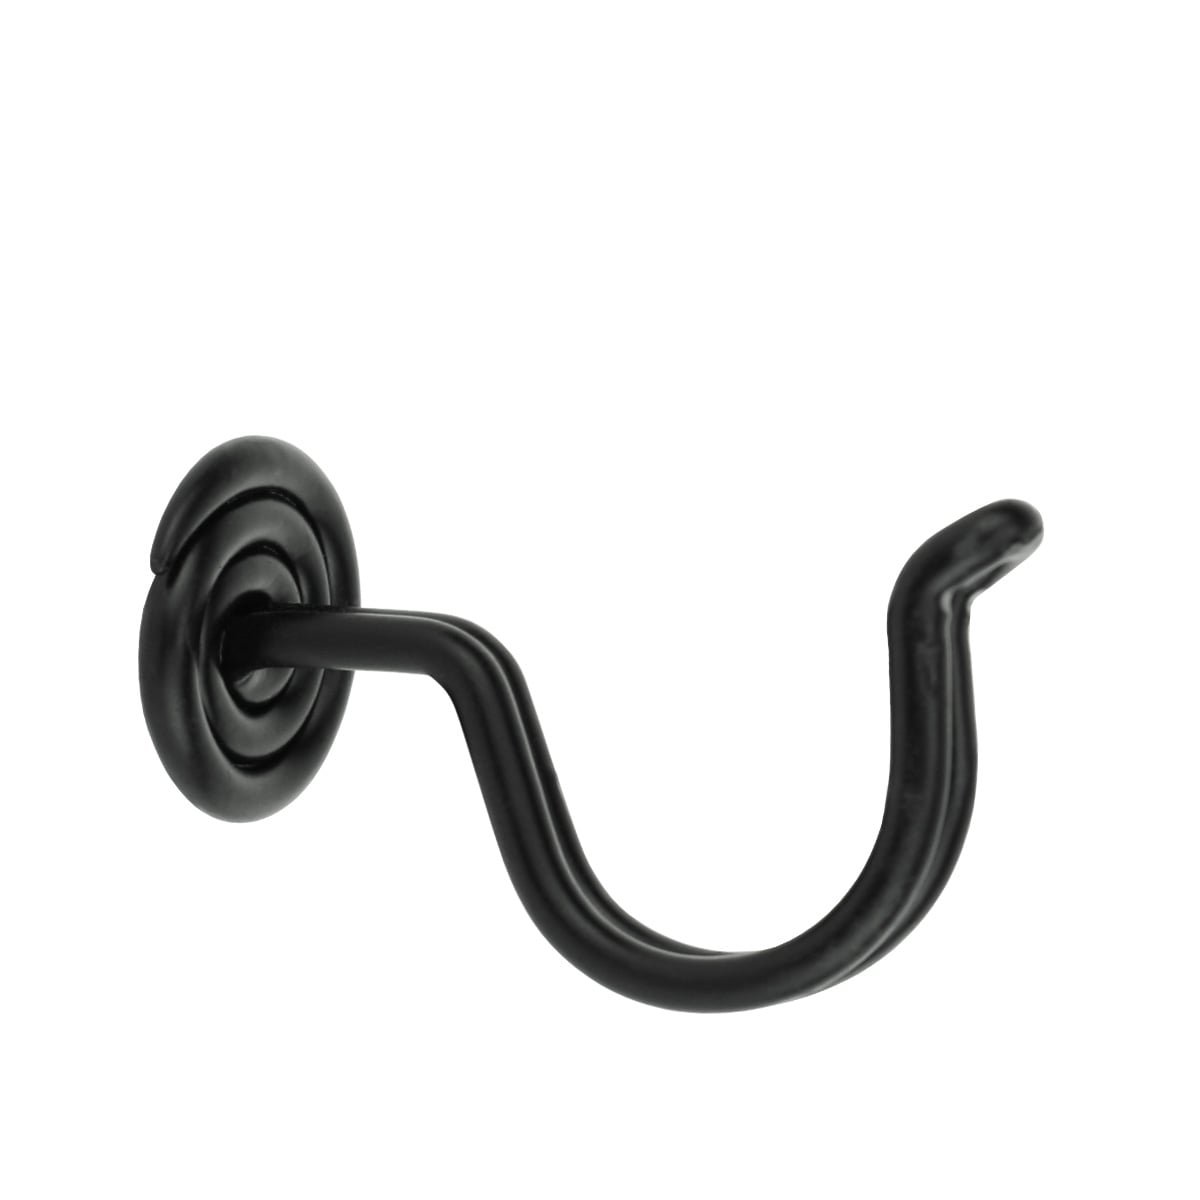 Trådkrog sort jern Altentreptow - 30 mm